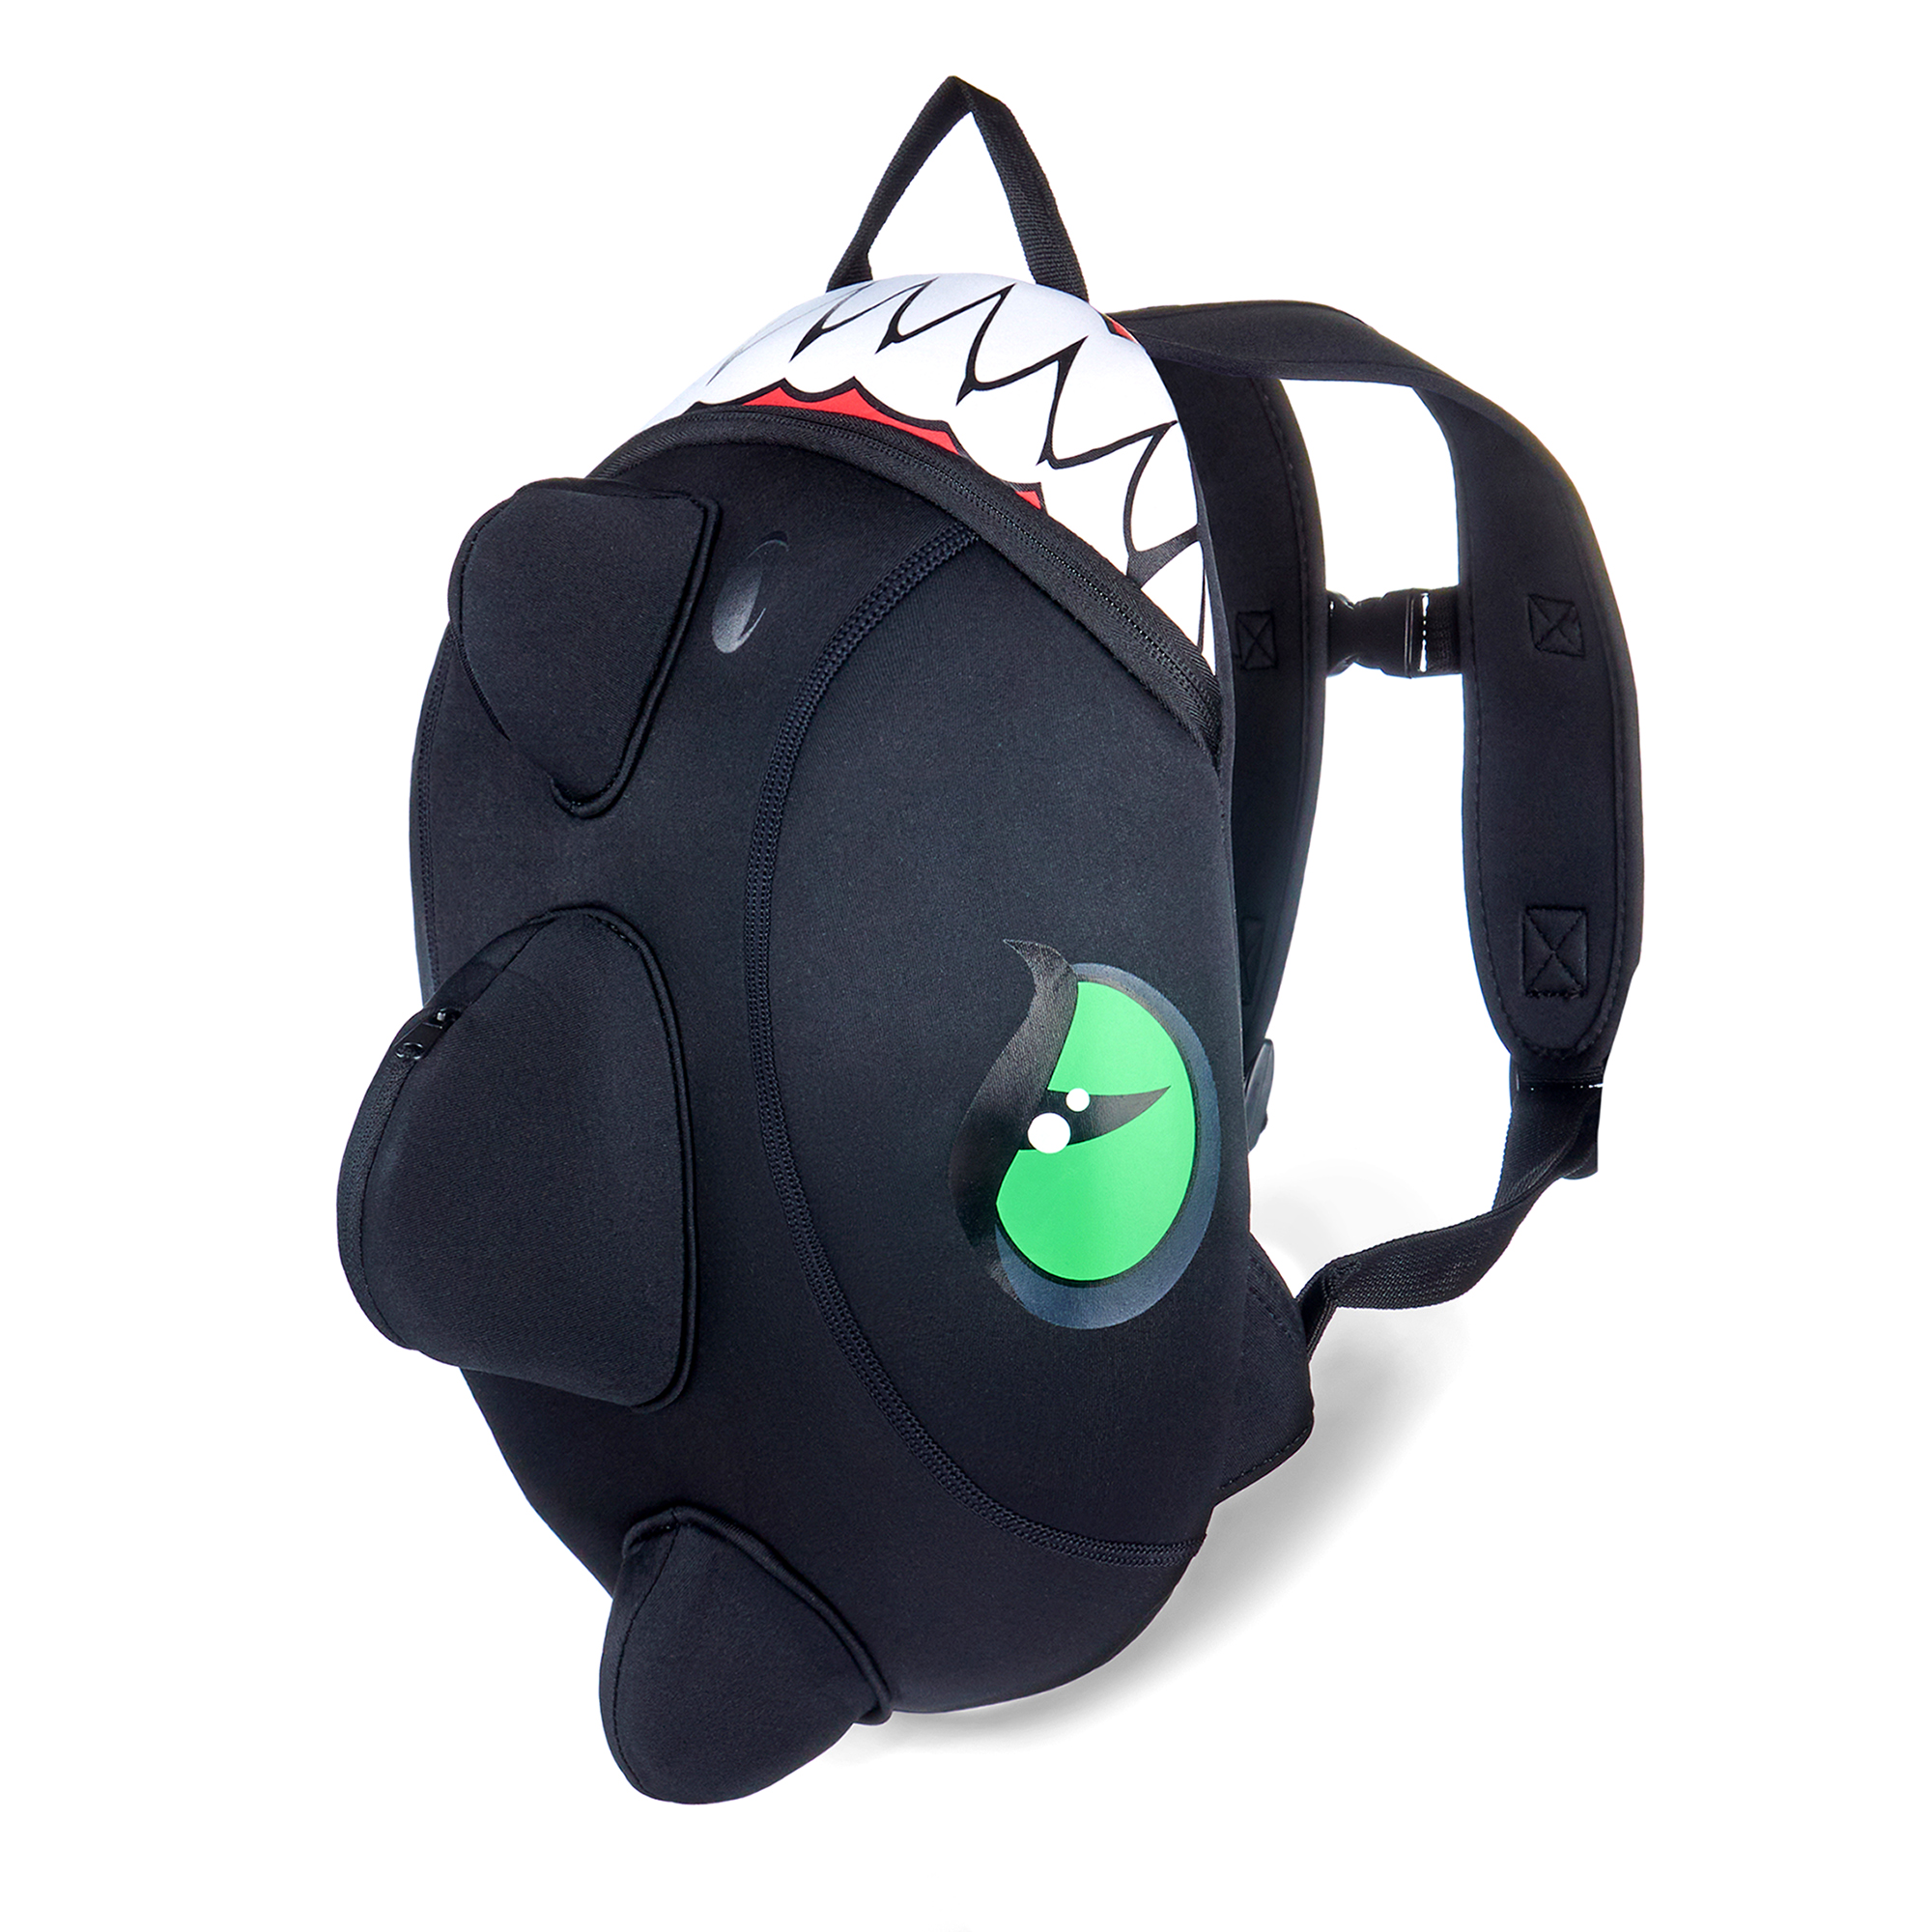 Crazy Safety sort drage rygsæk til børn  Slidstærk neoprentaske med mange funktioner. Testet og godkendt til børn